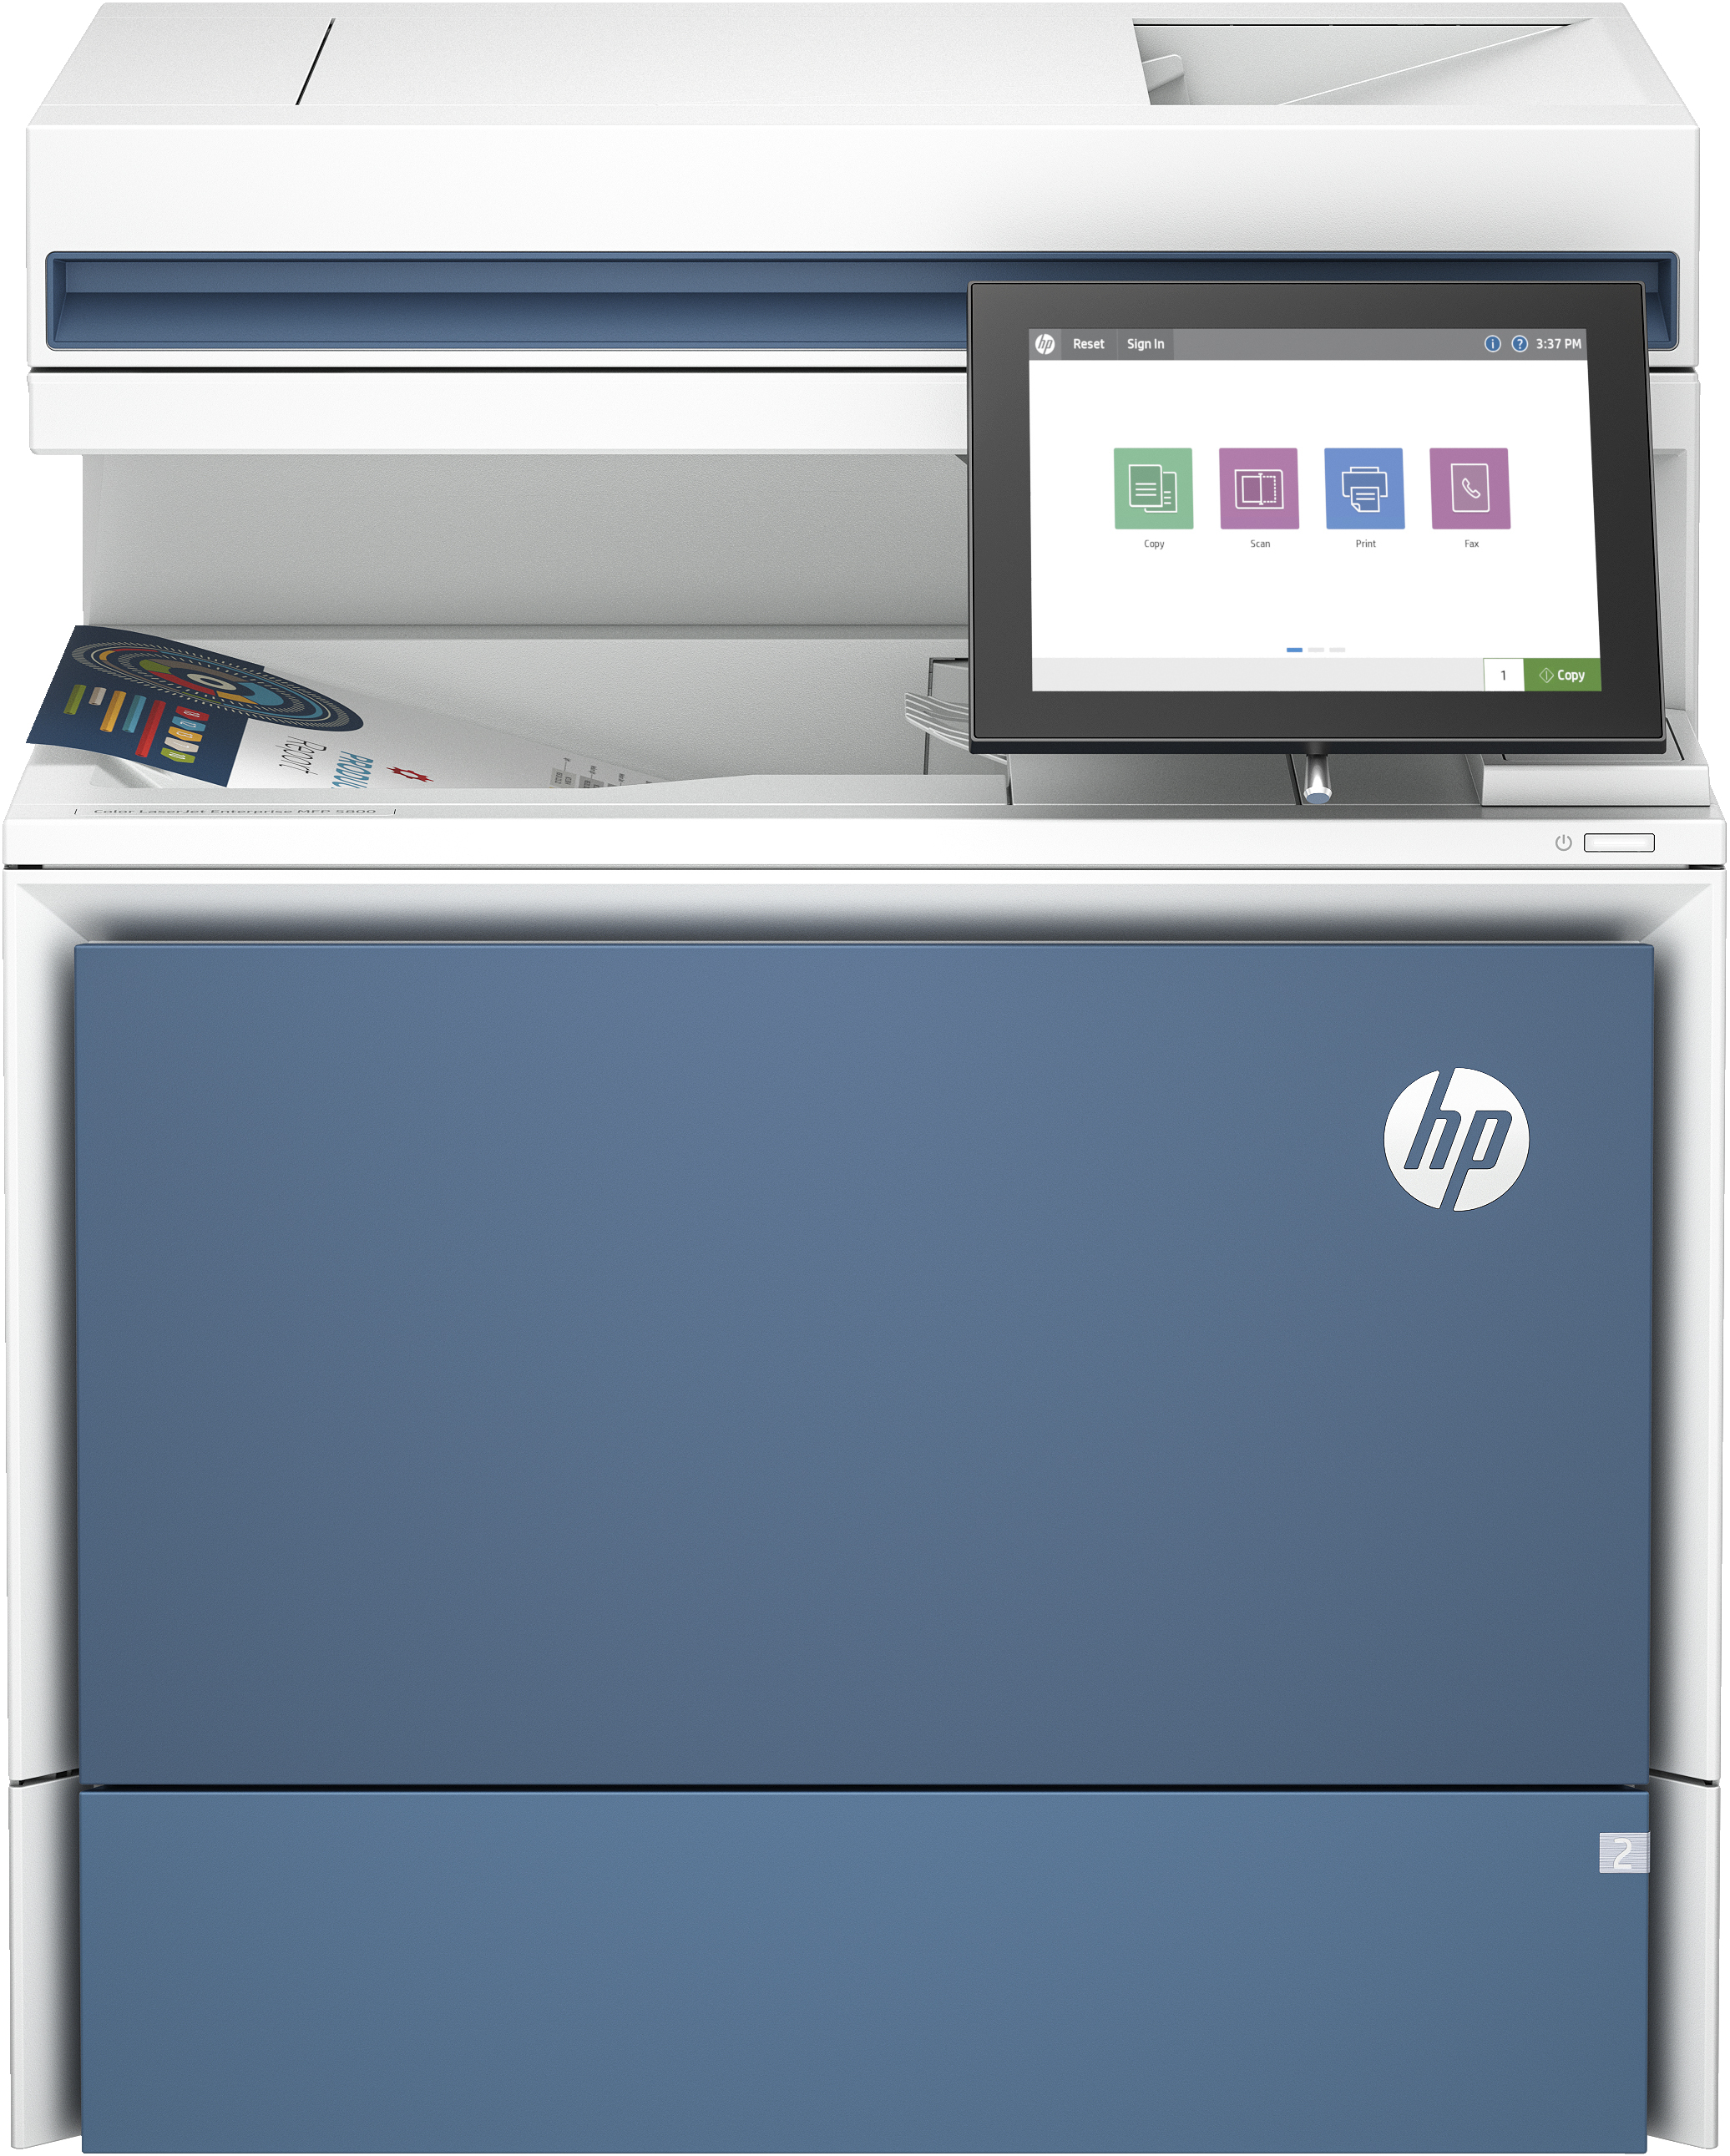 HP LaserJet Stampante multifunzione Color Enterprise 5800dn, Color, Stampante per Stampa, copia, scansione, fax (opzionale), Alimentatore automatico di documenti; vassoi ad alta capacit opzionali; touchscreen; cartuccia TerraJet